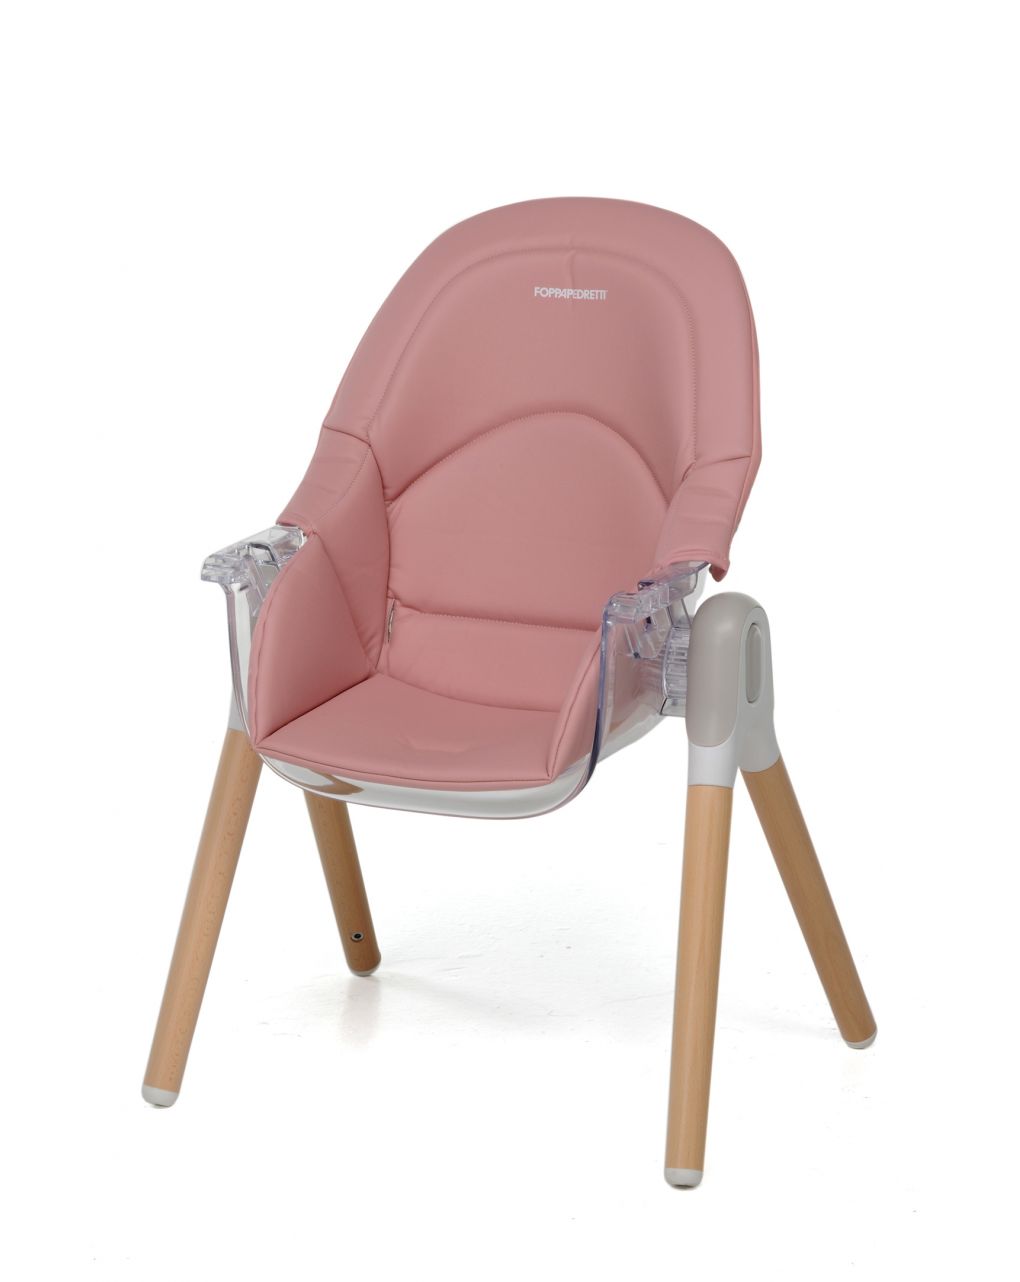 Seggiolone/baby sedia bonito 2 in 1 pink - Foppapedretti